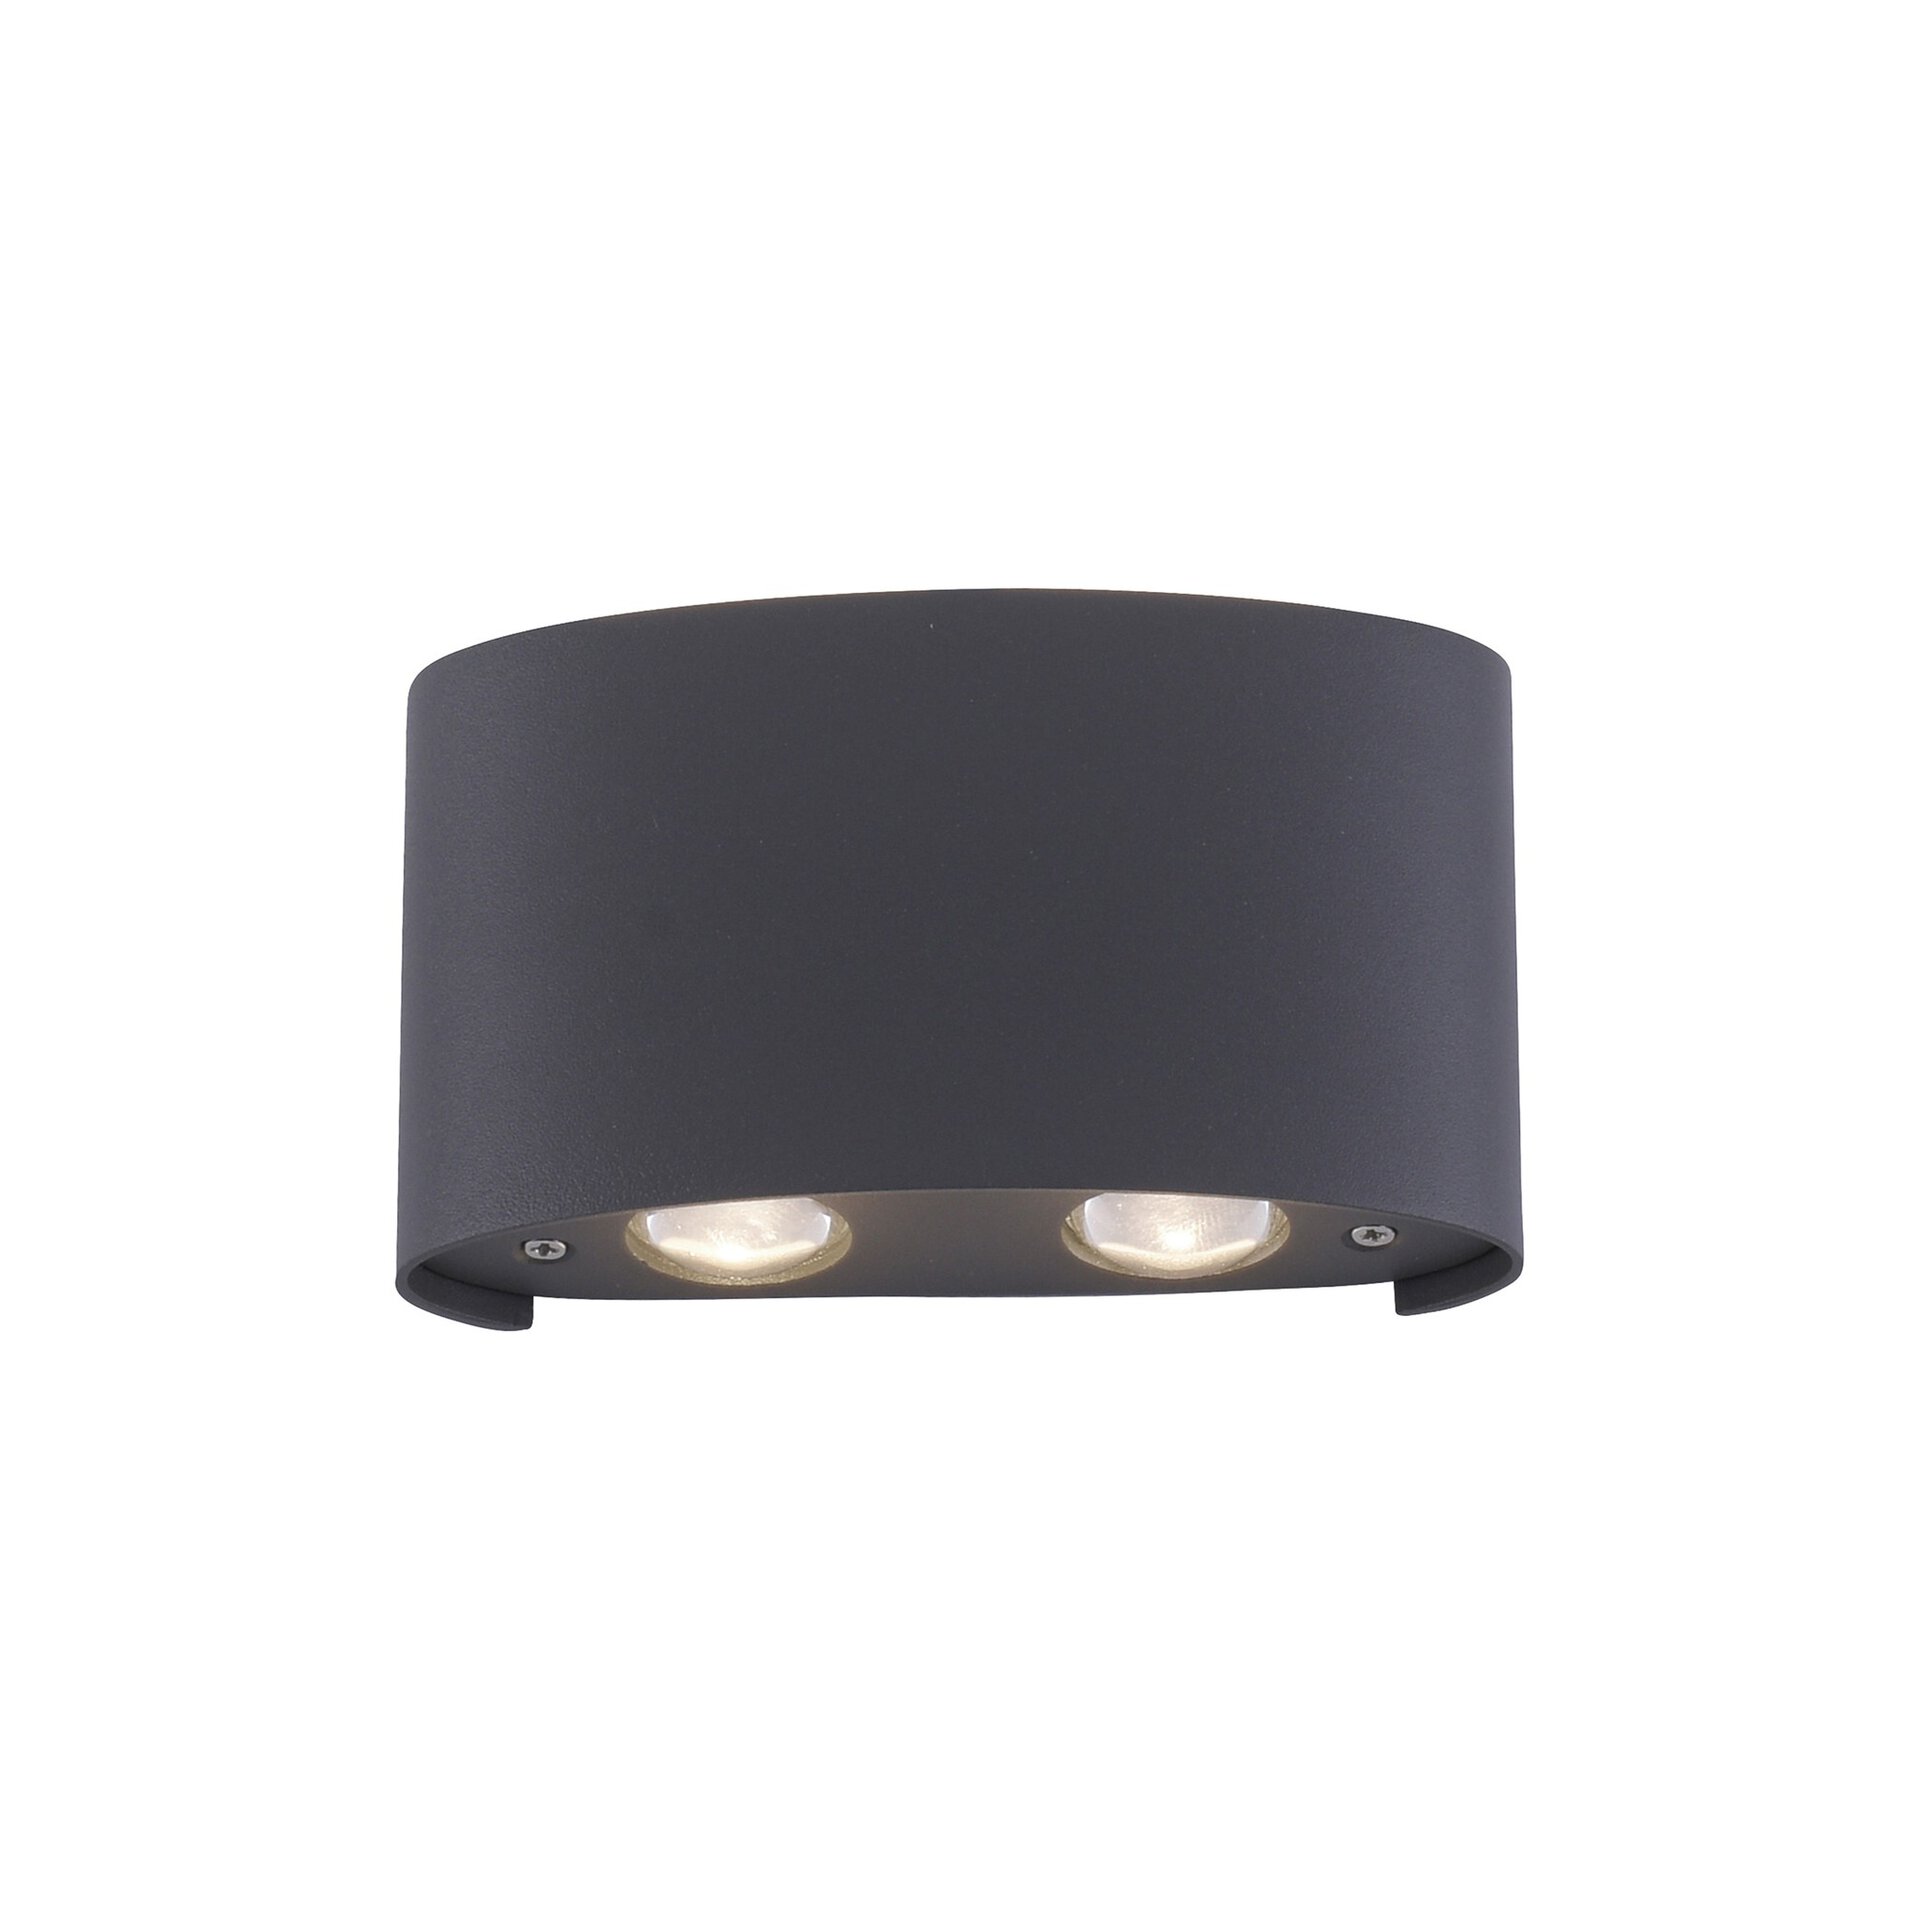 Wand-Aussenleuchte LED schwarz | Möbel Inhofer